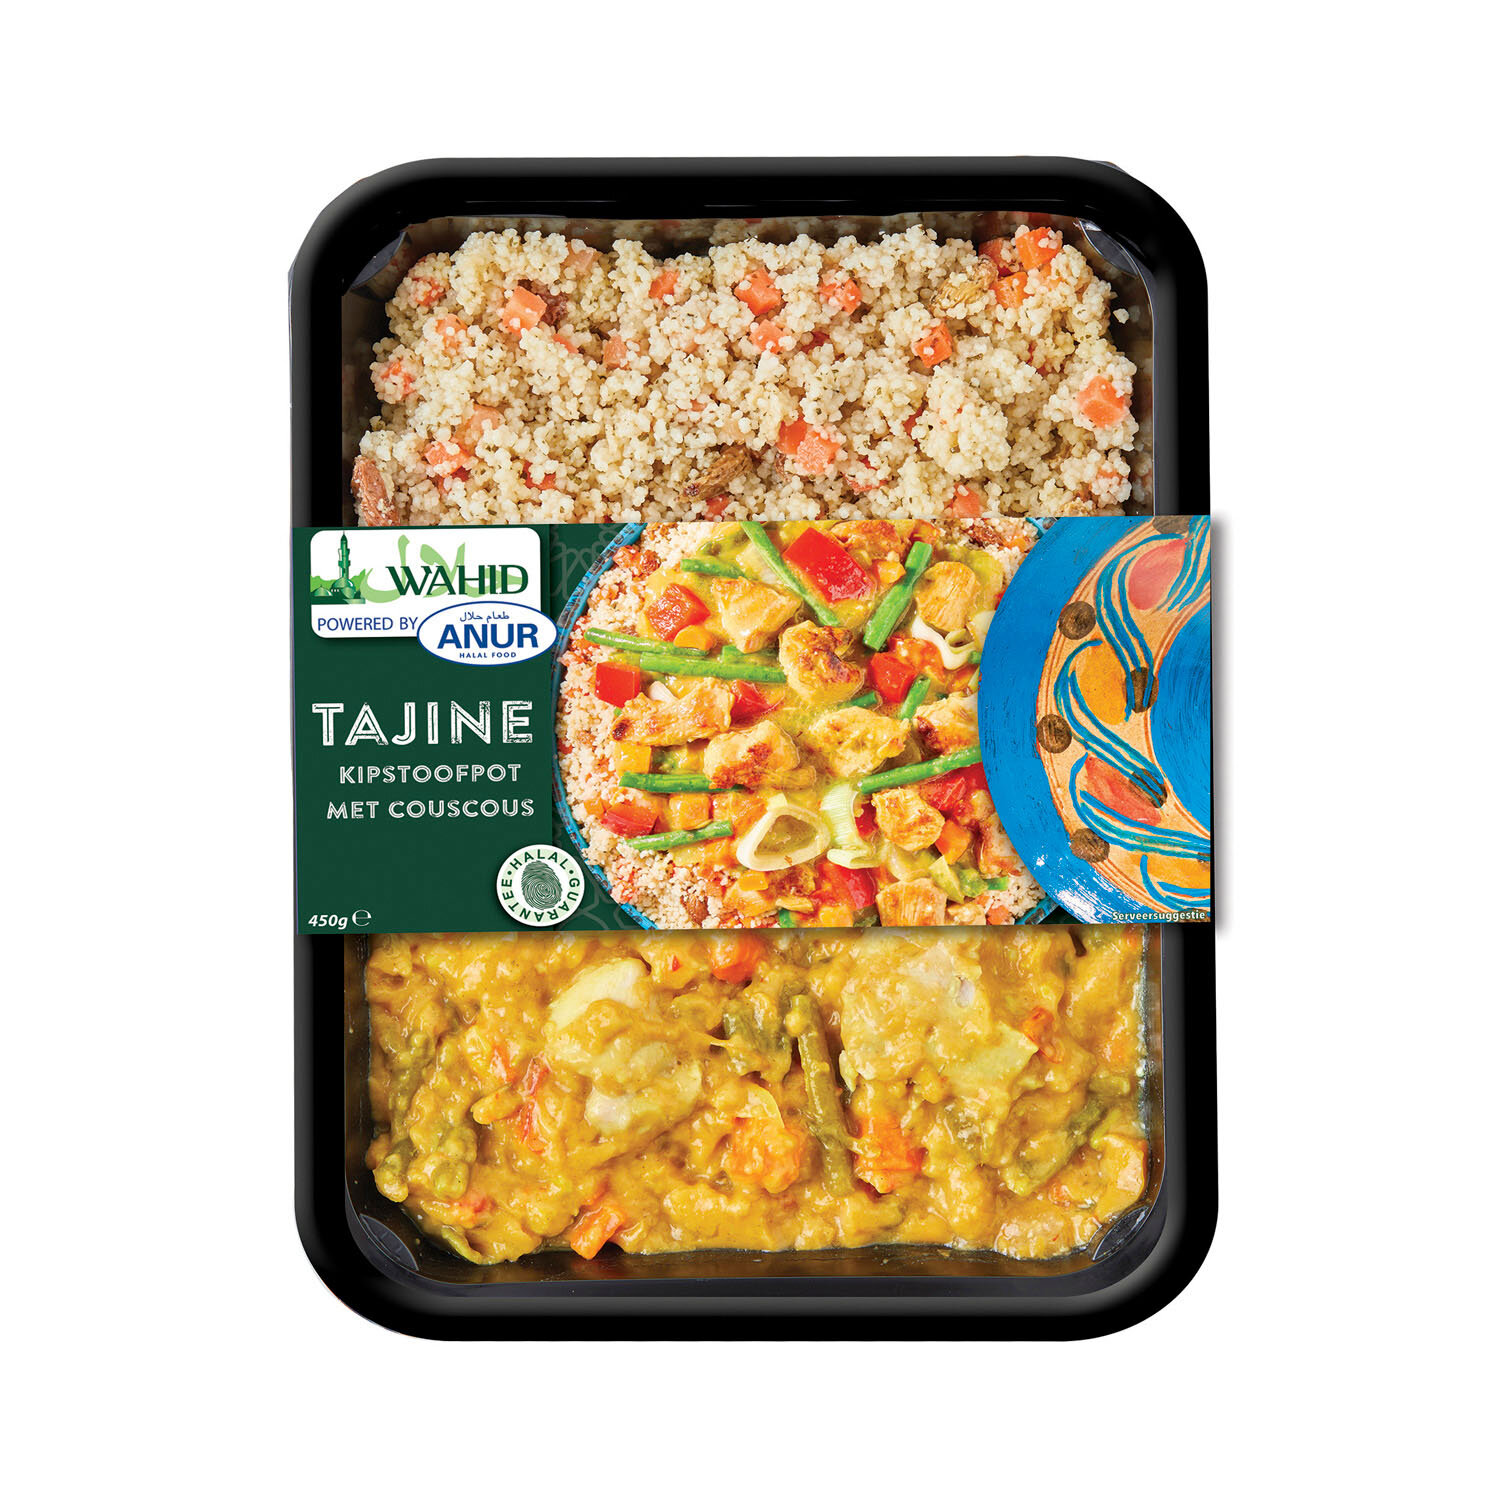 Tajine - Kipstoofpot met couscous - Wahid (Copy)